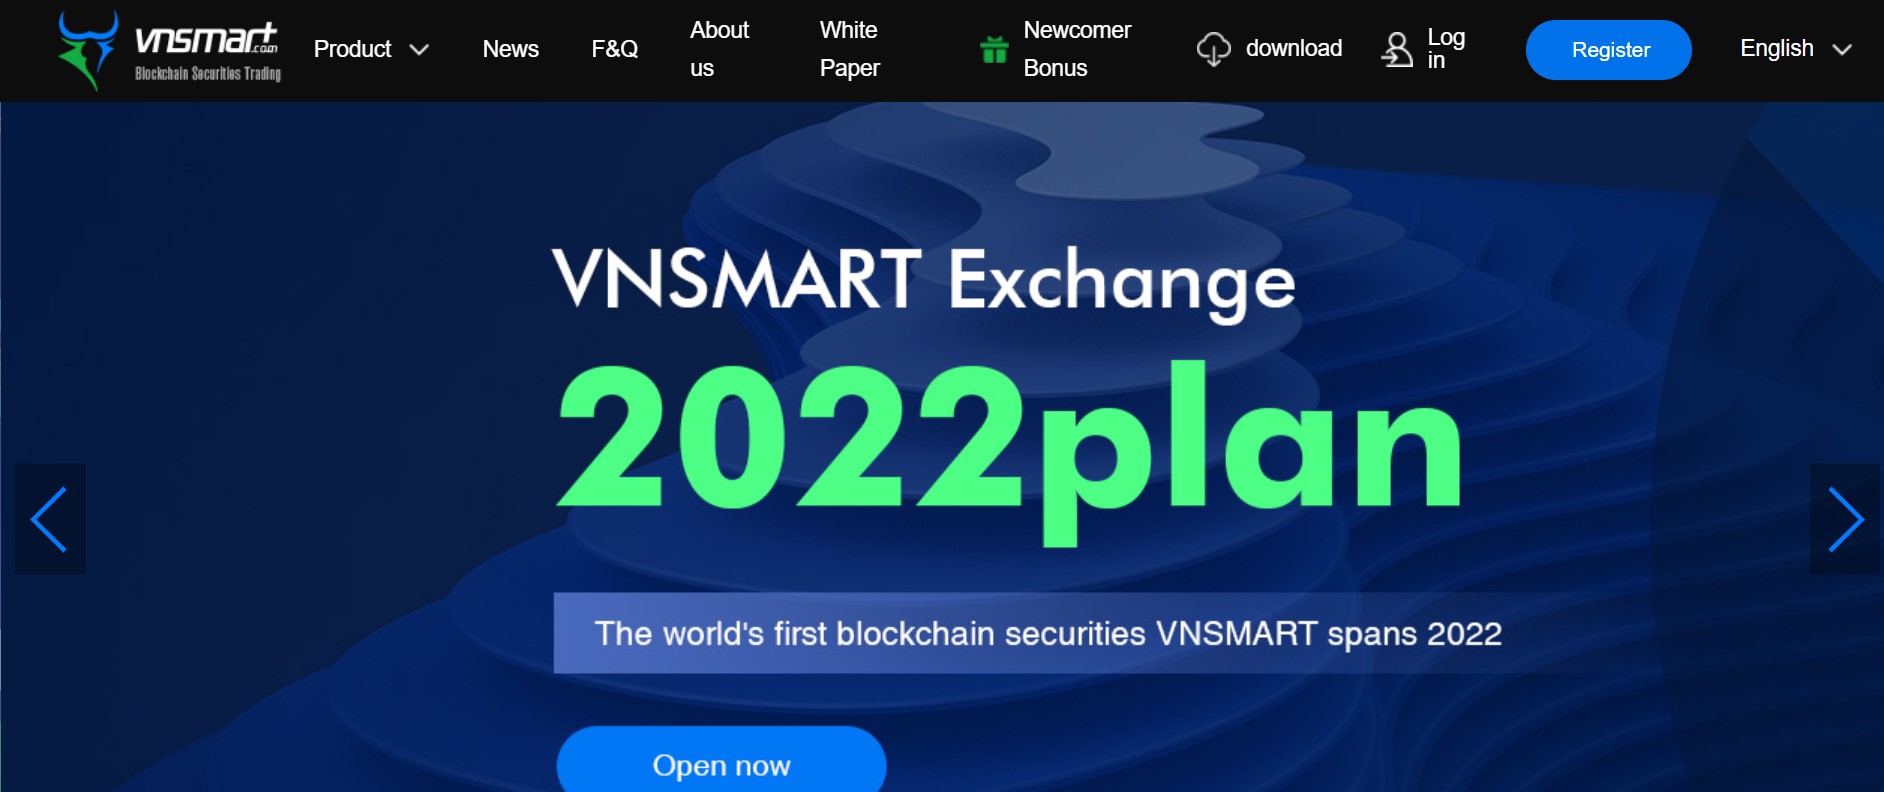 VNSMART website